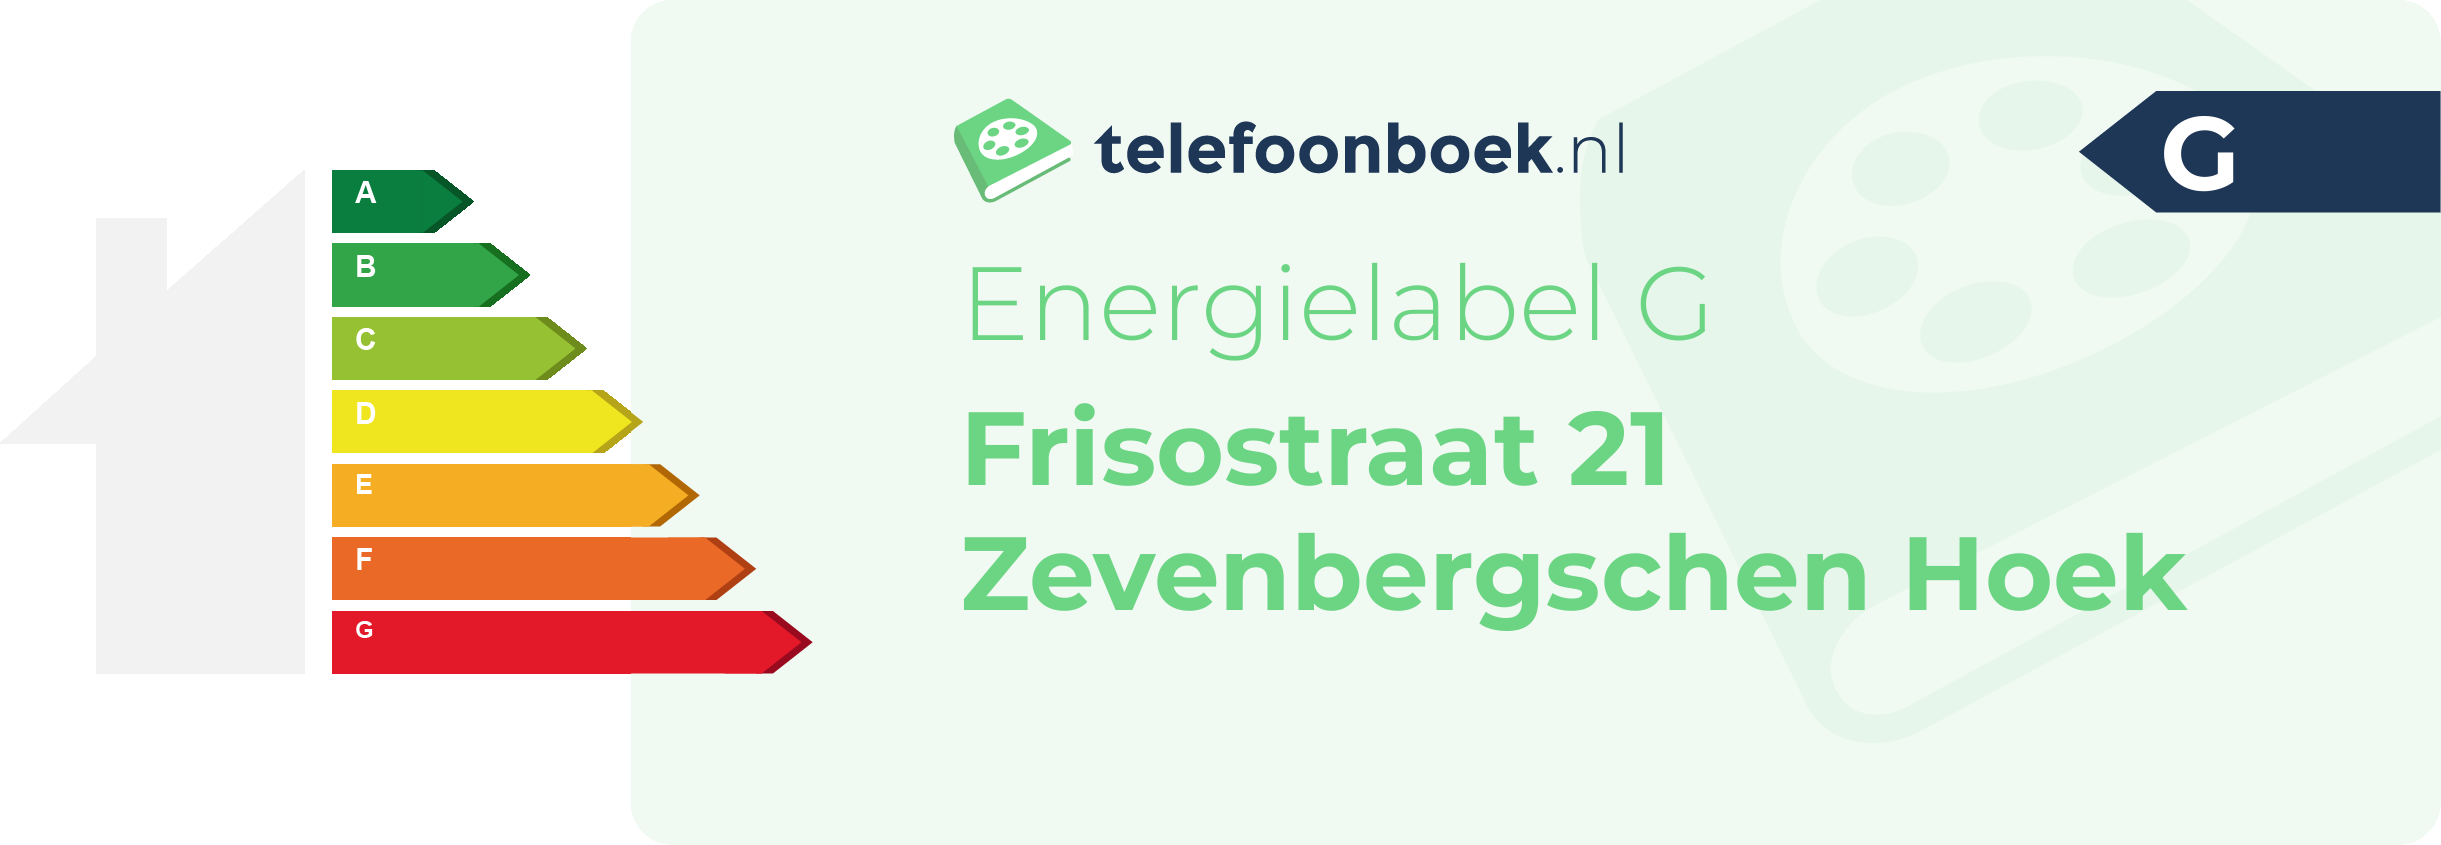 Energielabel Frisostraat 21 Zevenbergschen Hoek